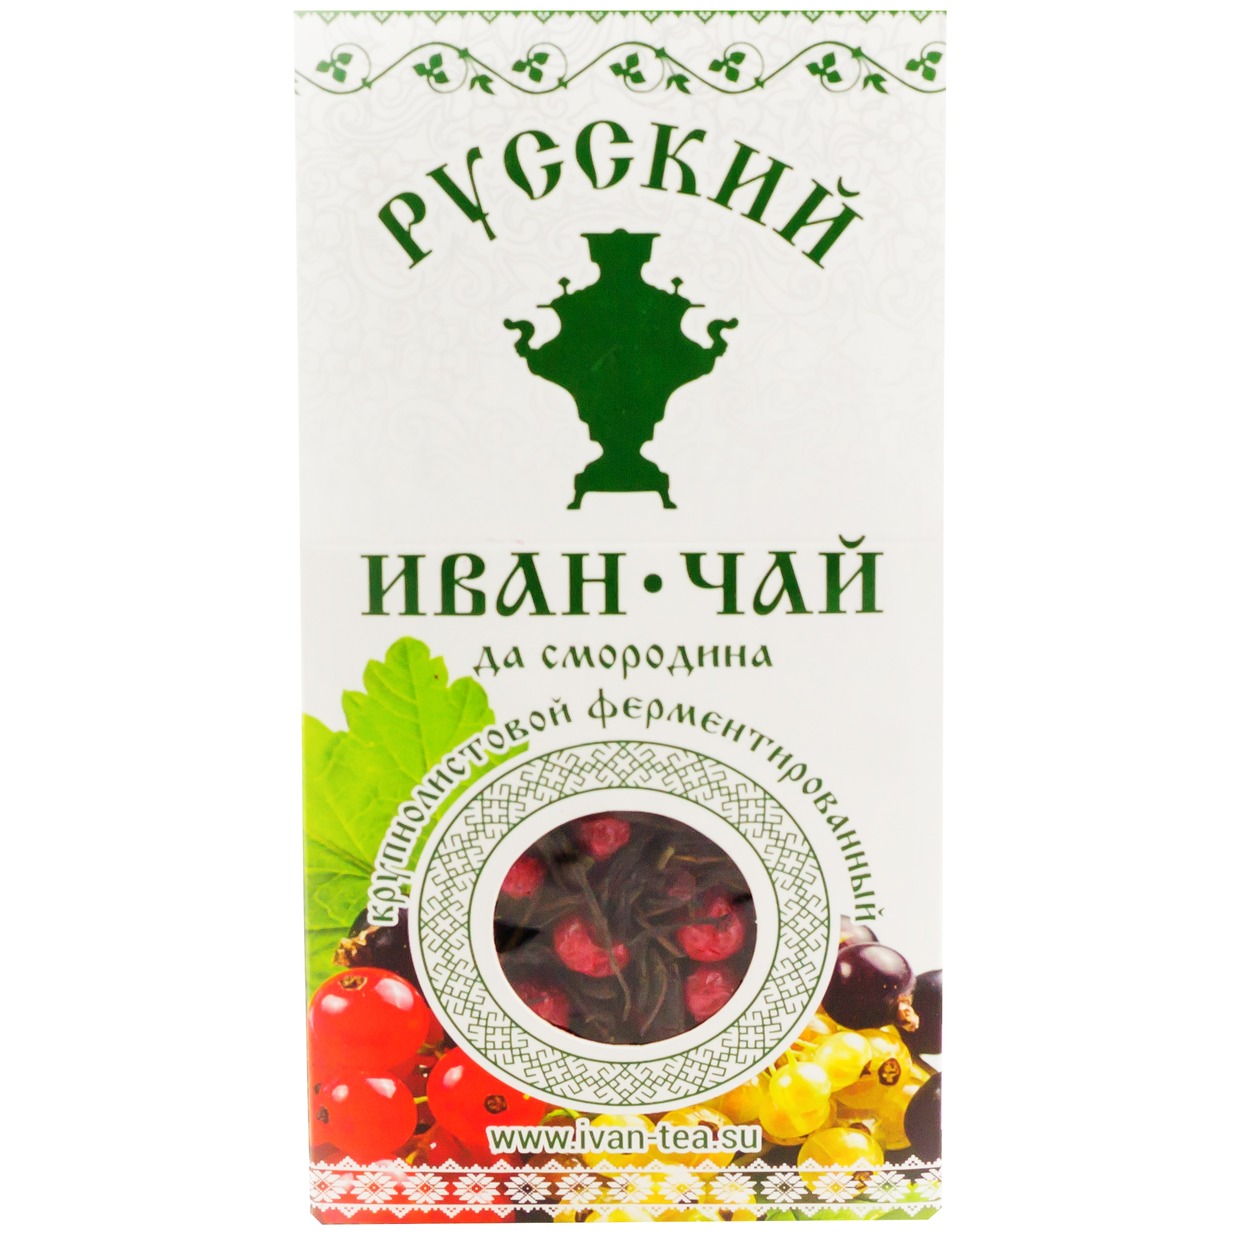 Напиток чайный Русский Иван-чай да смородина 50 г по акции в Пятерочке